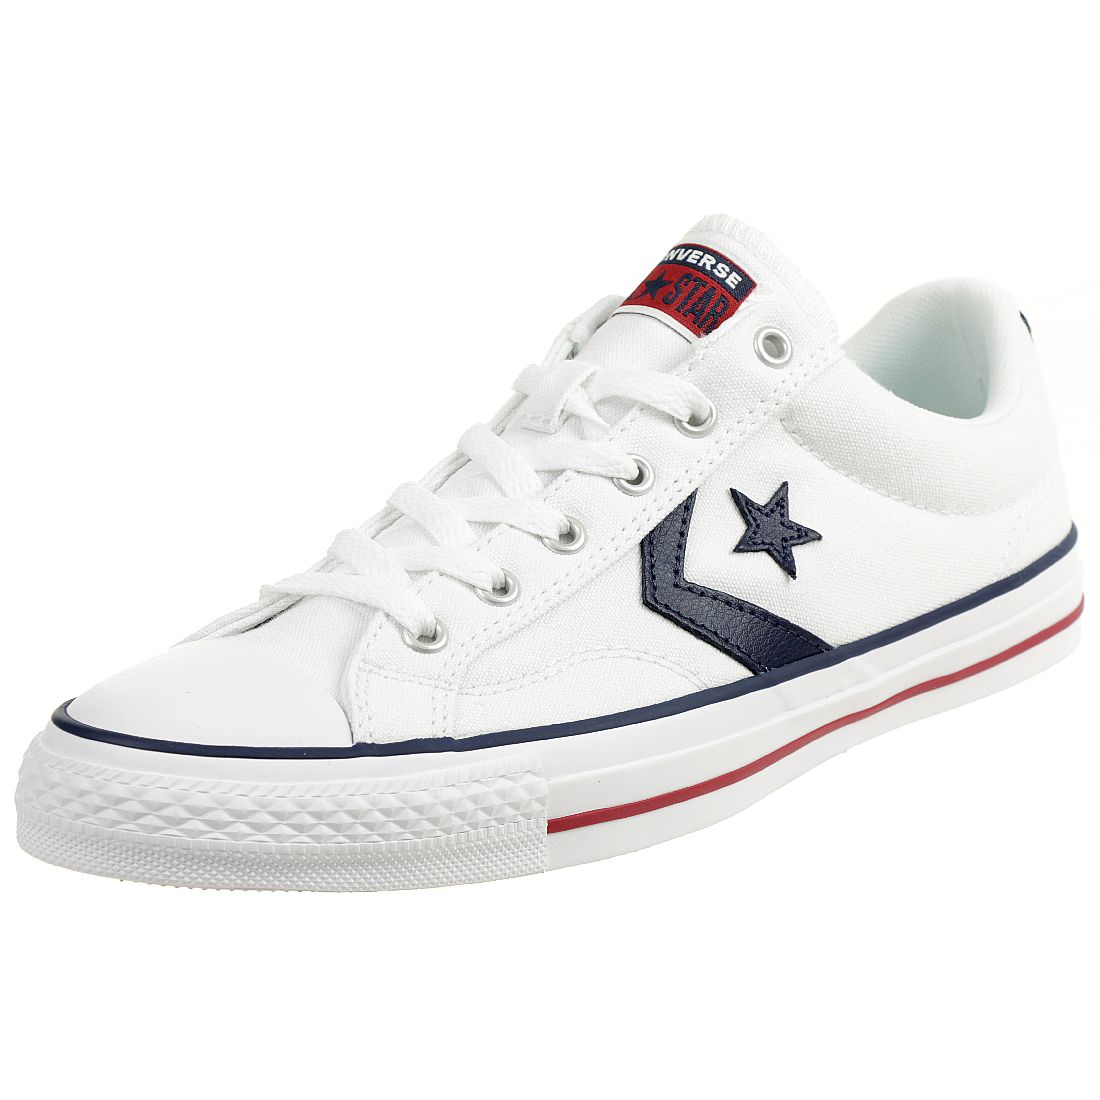 Converse STAR PLAYER OX Schuhe Sneaker Canvas Unisex Weiss 144151C 36.5 EU